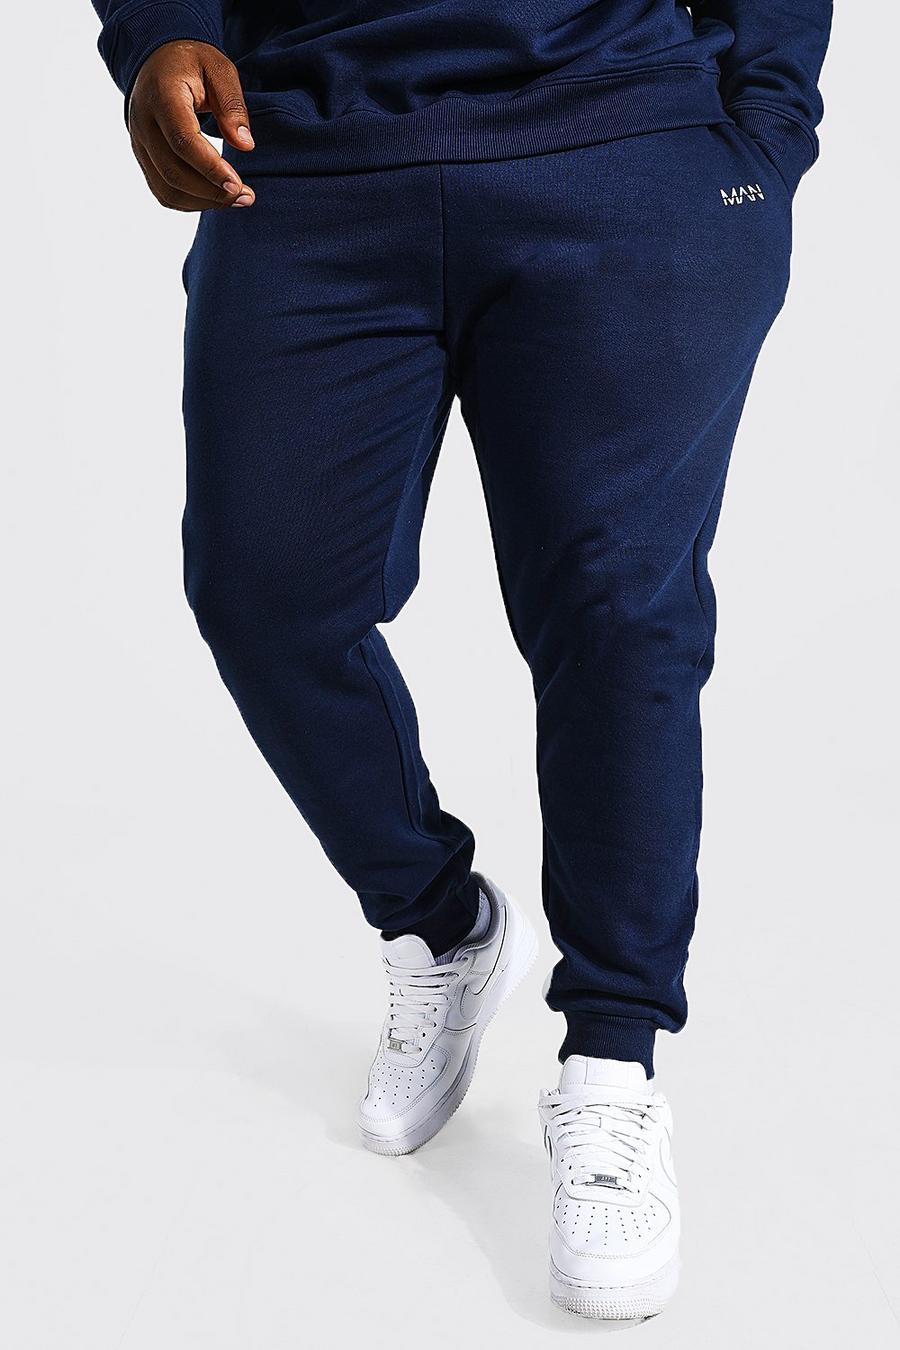 נייבי blu oltremare מכנסי ריצה סקיני מבד ממוחזר עם כיתוב חצוי Man, מידות גדולות